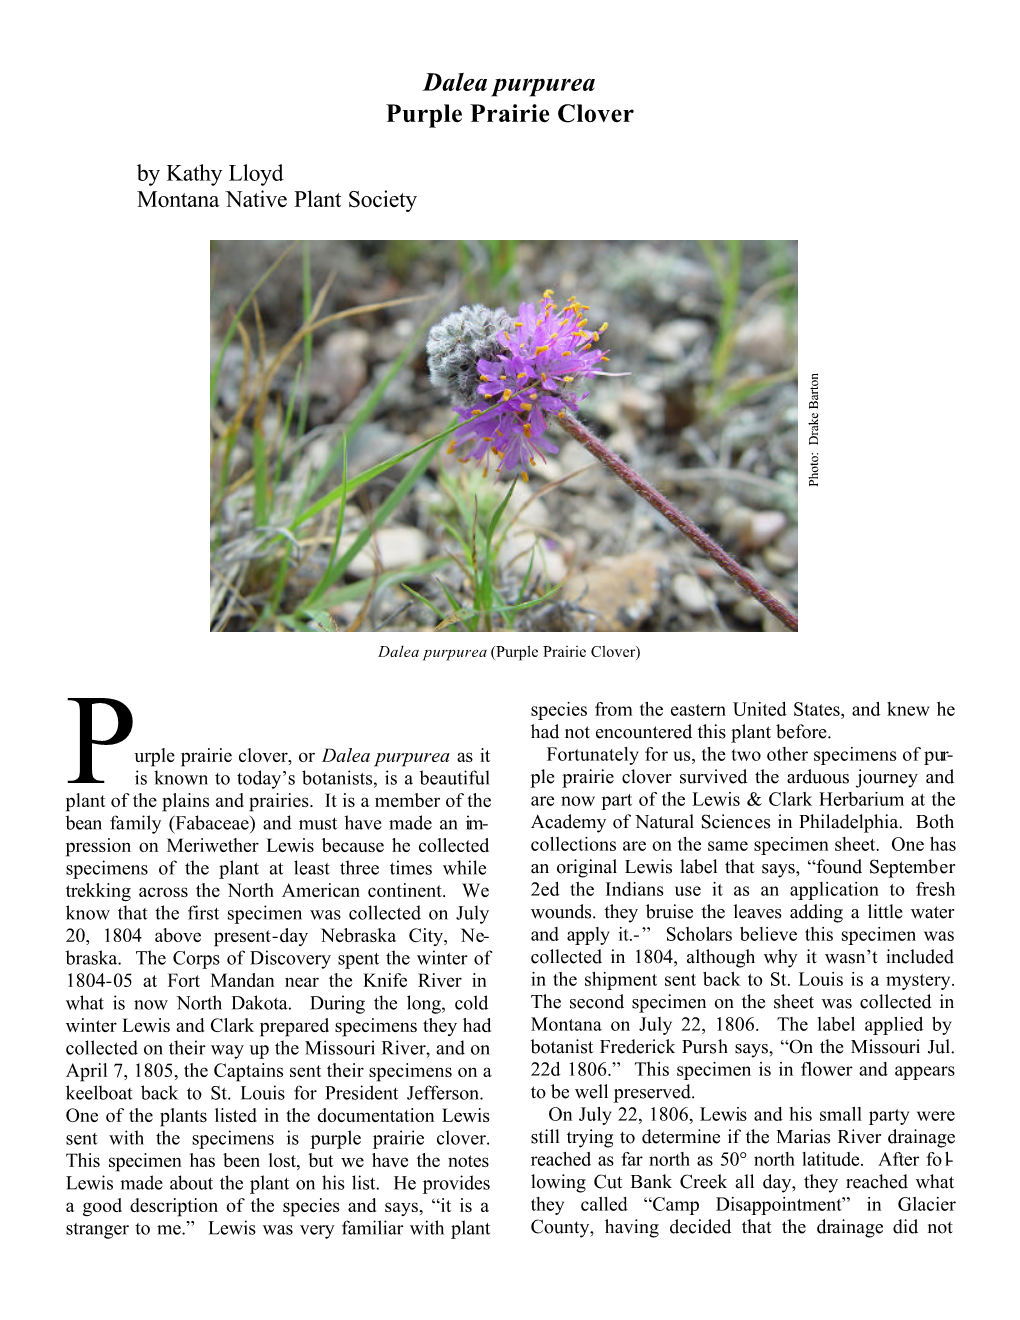 Dalea Purpurea Purple Prairie Clover